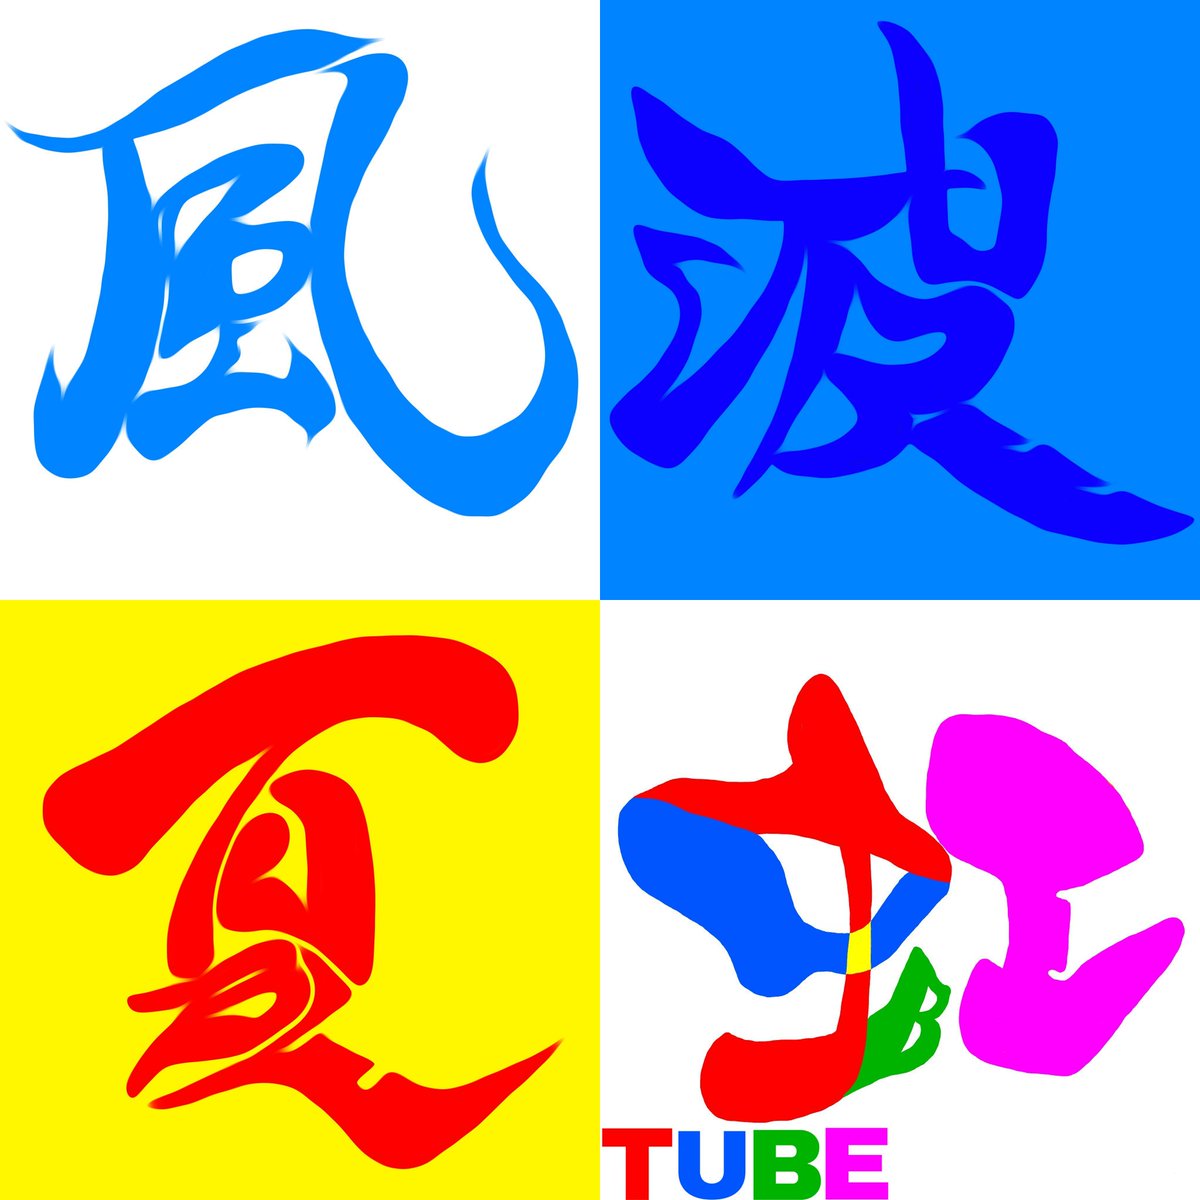 サイトーセーゾー Saitoseizo على تويتر Tube の文字で 夏 波 虹 風 の字を 制作しました Tube チューブ 漢字 夏 波 虹 風 アンビグラム 文字アート サイトーセーゾー